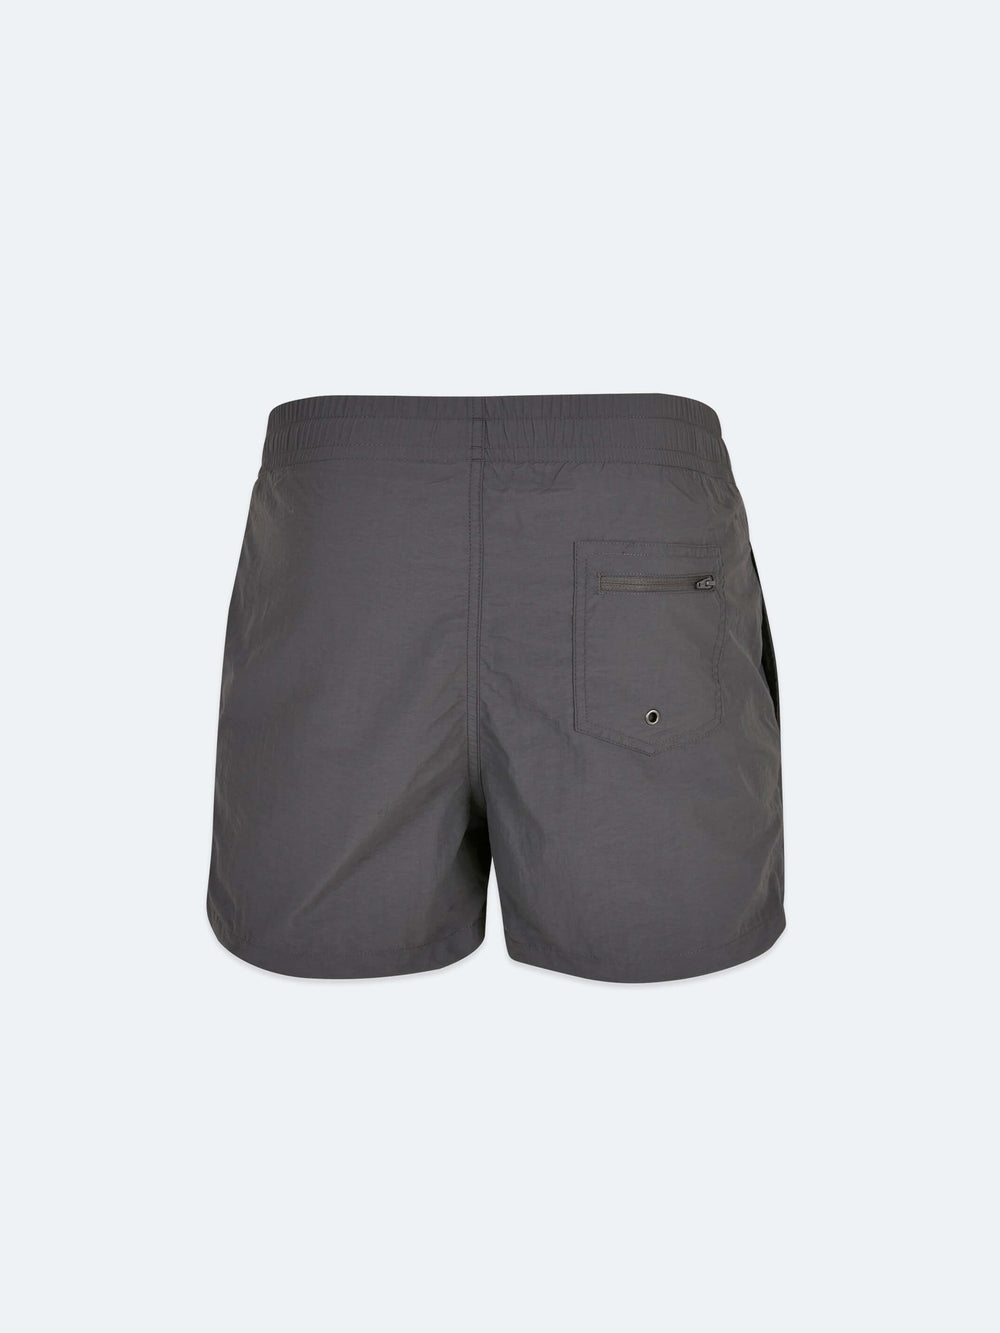 Stencil Swim Shorts (Dark Grey)